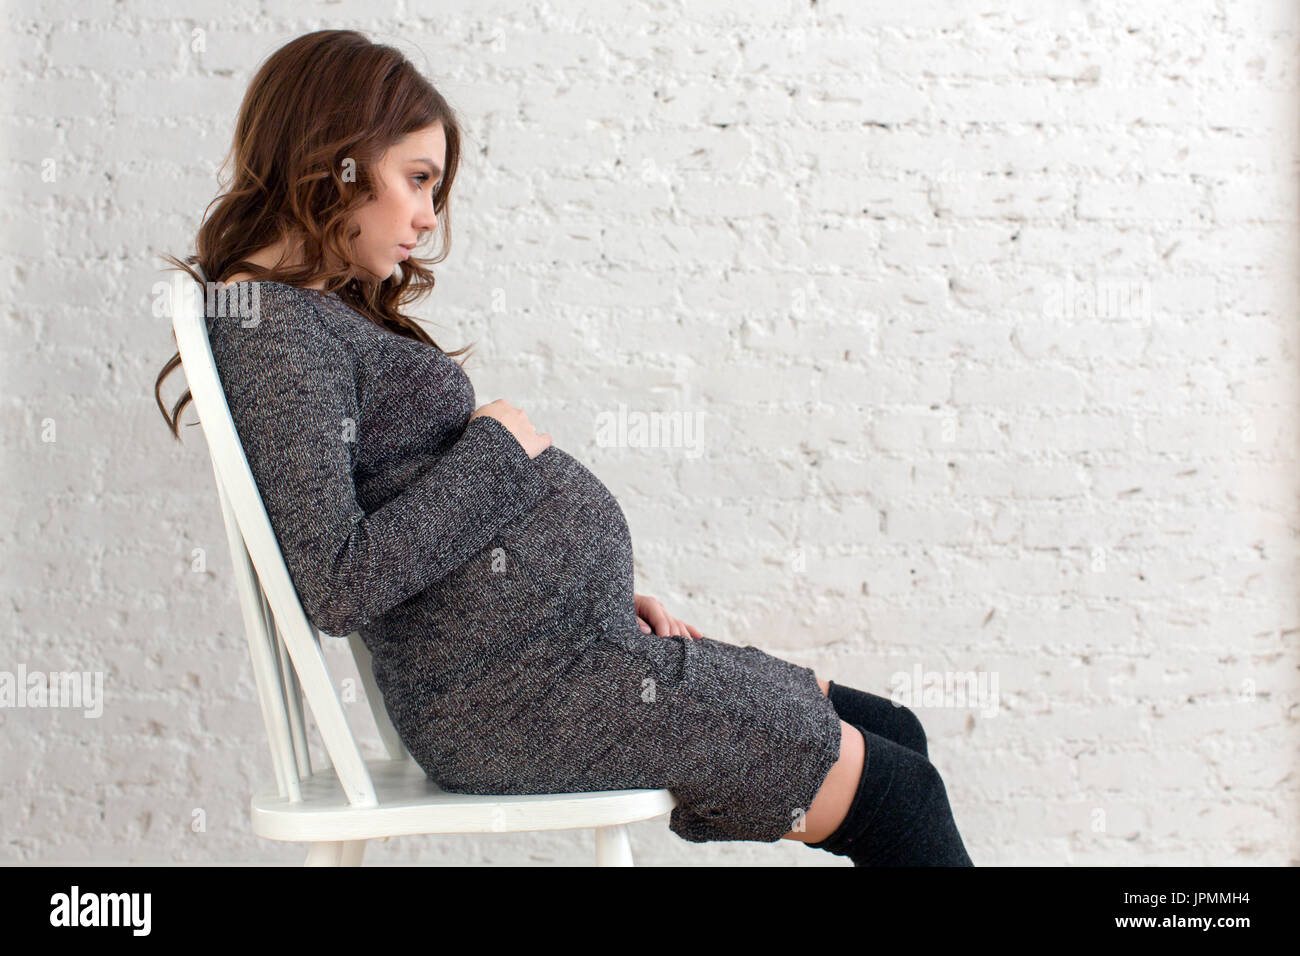 Femmine gravide seduti su una sedia in posa Foto Stock